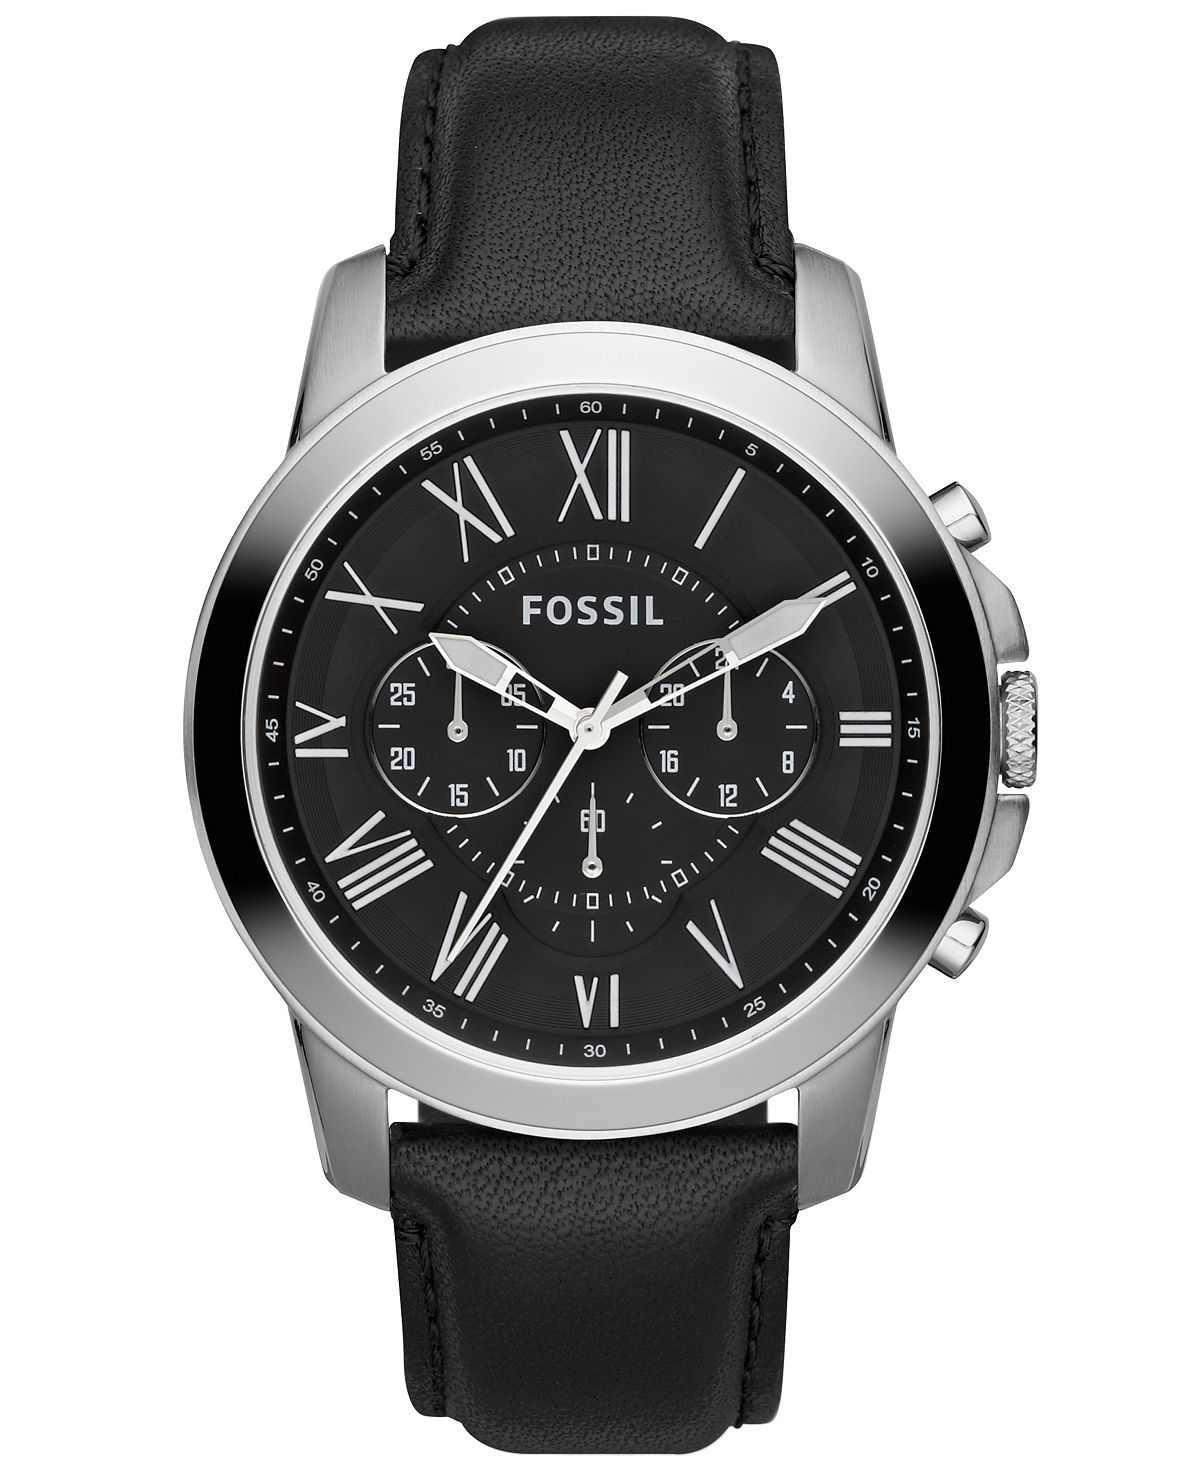 Мужские часы с хронографом Grant с черным кожаным ремешком 44 мм FS4812 Fossil fossil grant me3102